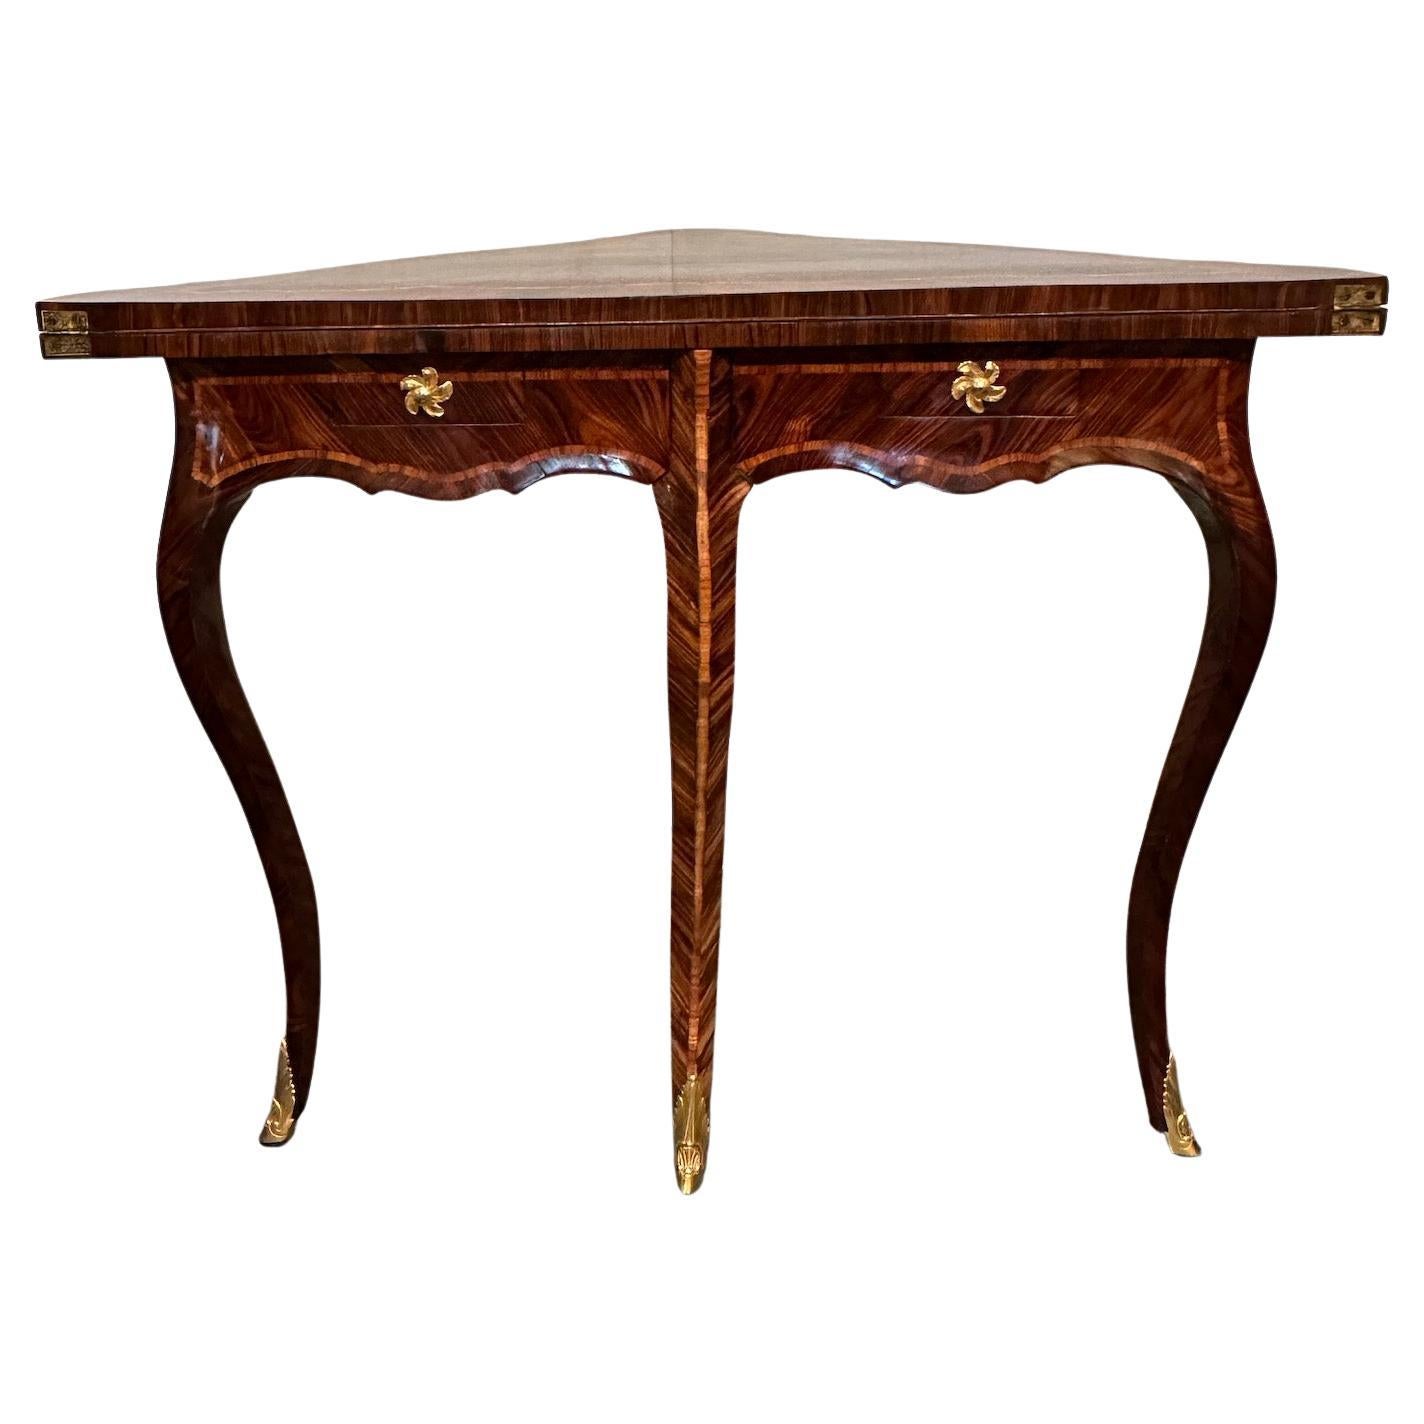 Ein eleganter und schöner Eckspieltisch im Stil Louis XV aus genopptem Mahagoni und Königsholzfurnier.  Knöpfe und Säbel aus vergoldeter Bronze.  2 Schubladen.  Oben offen für  30